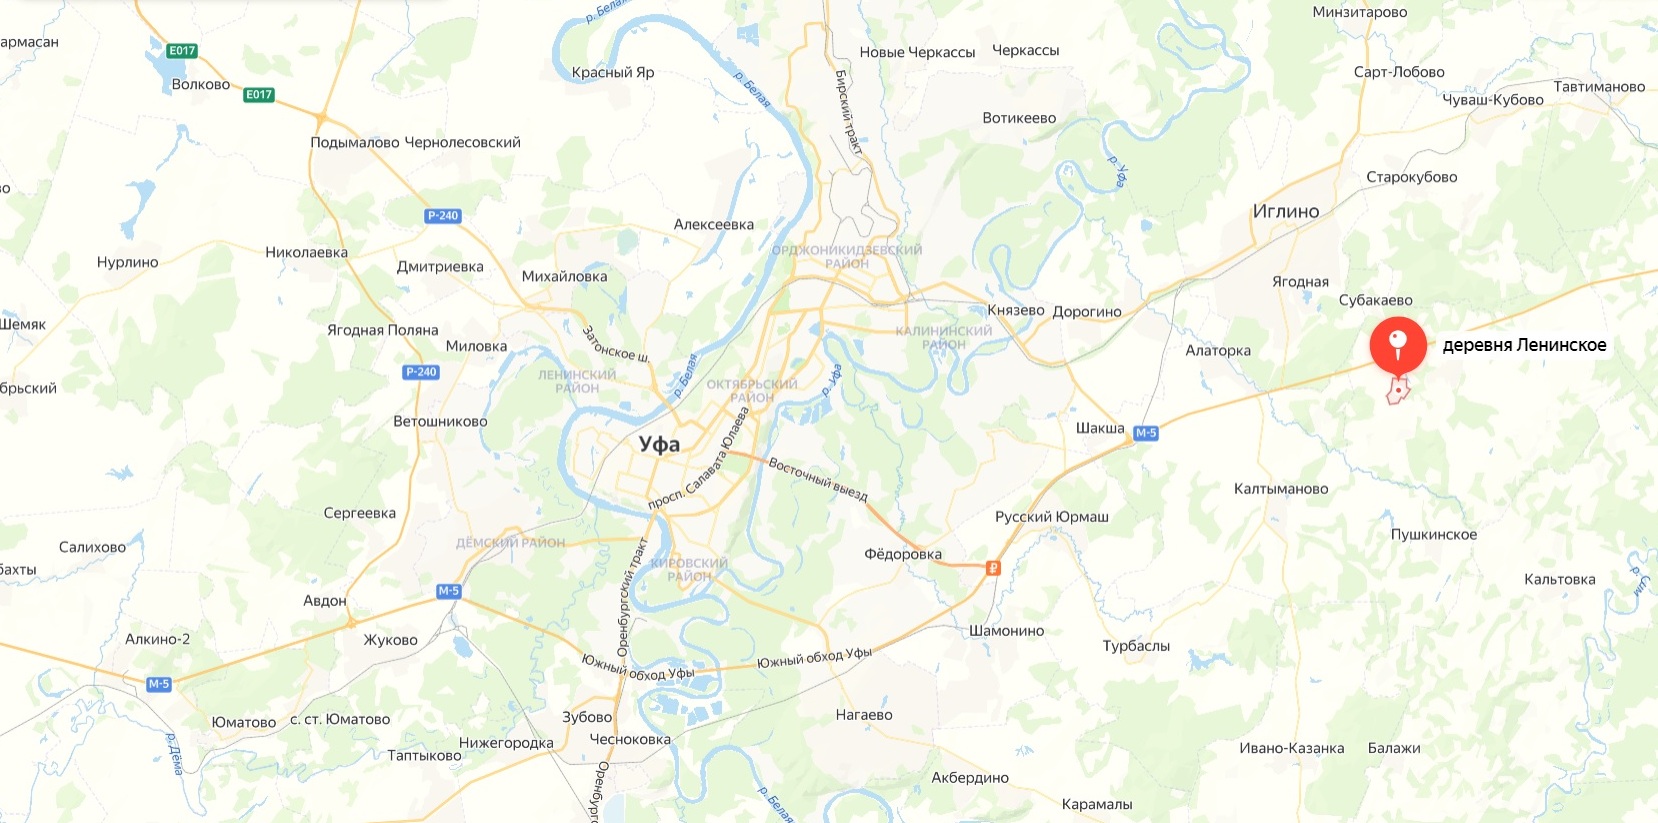 Map_Leninskoe.jpg